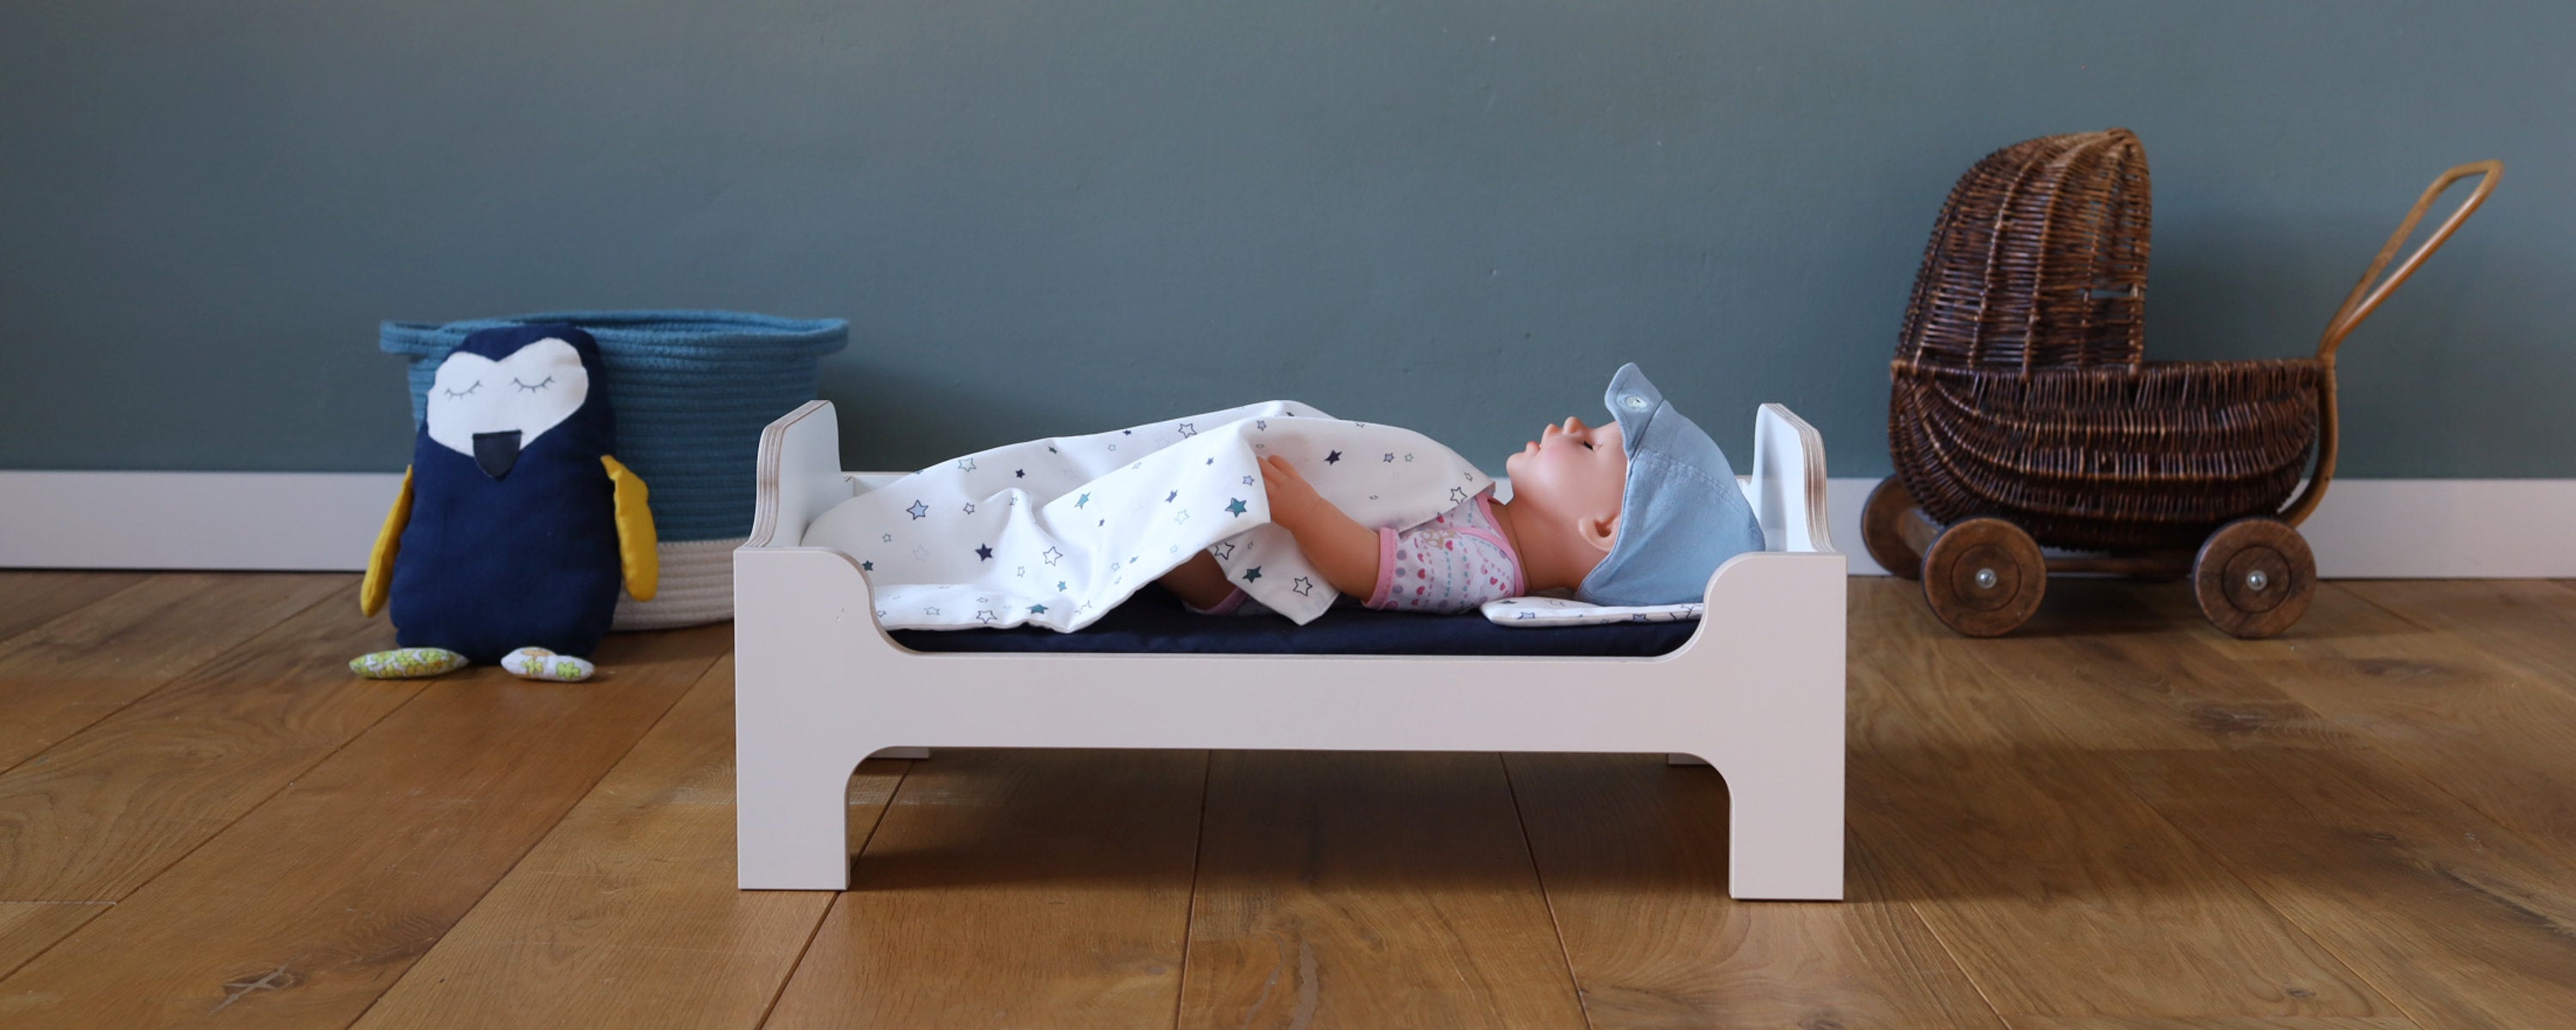 Puppenbett Minimi von Wilja weiss aus Holz mit Puppenbettwäsche